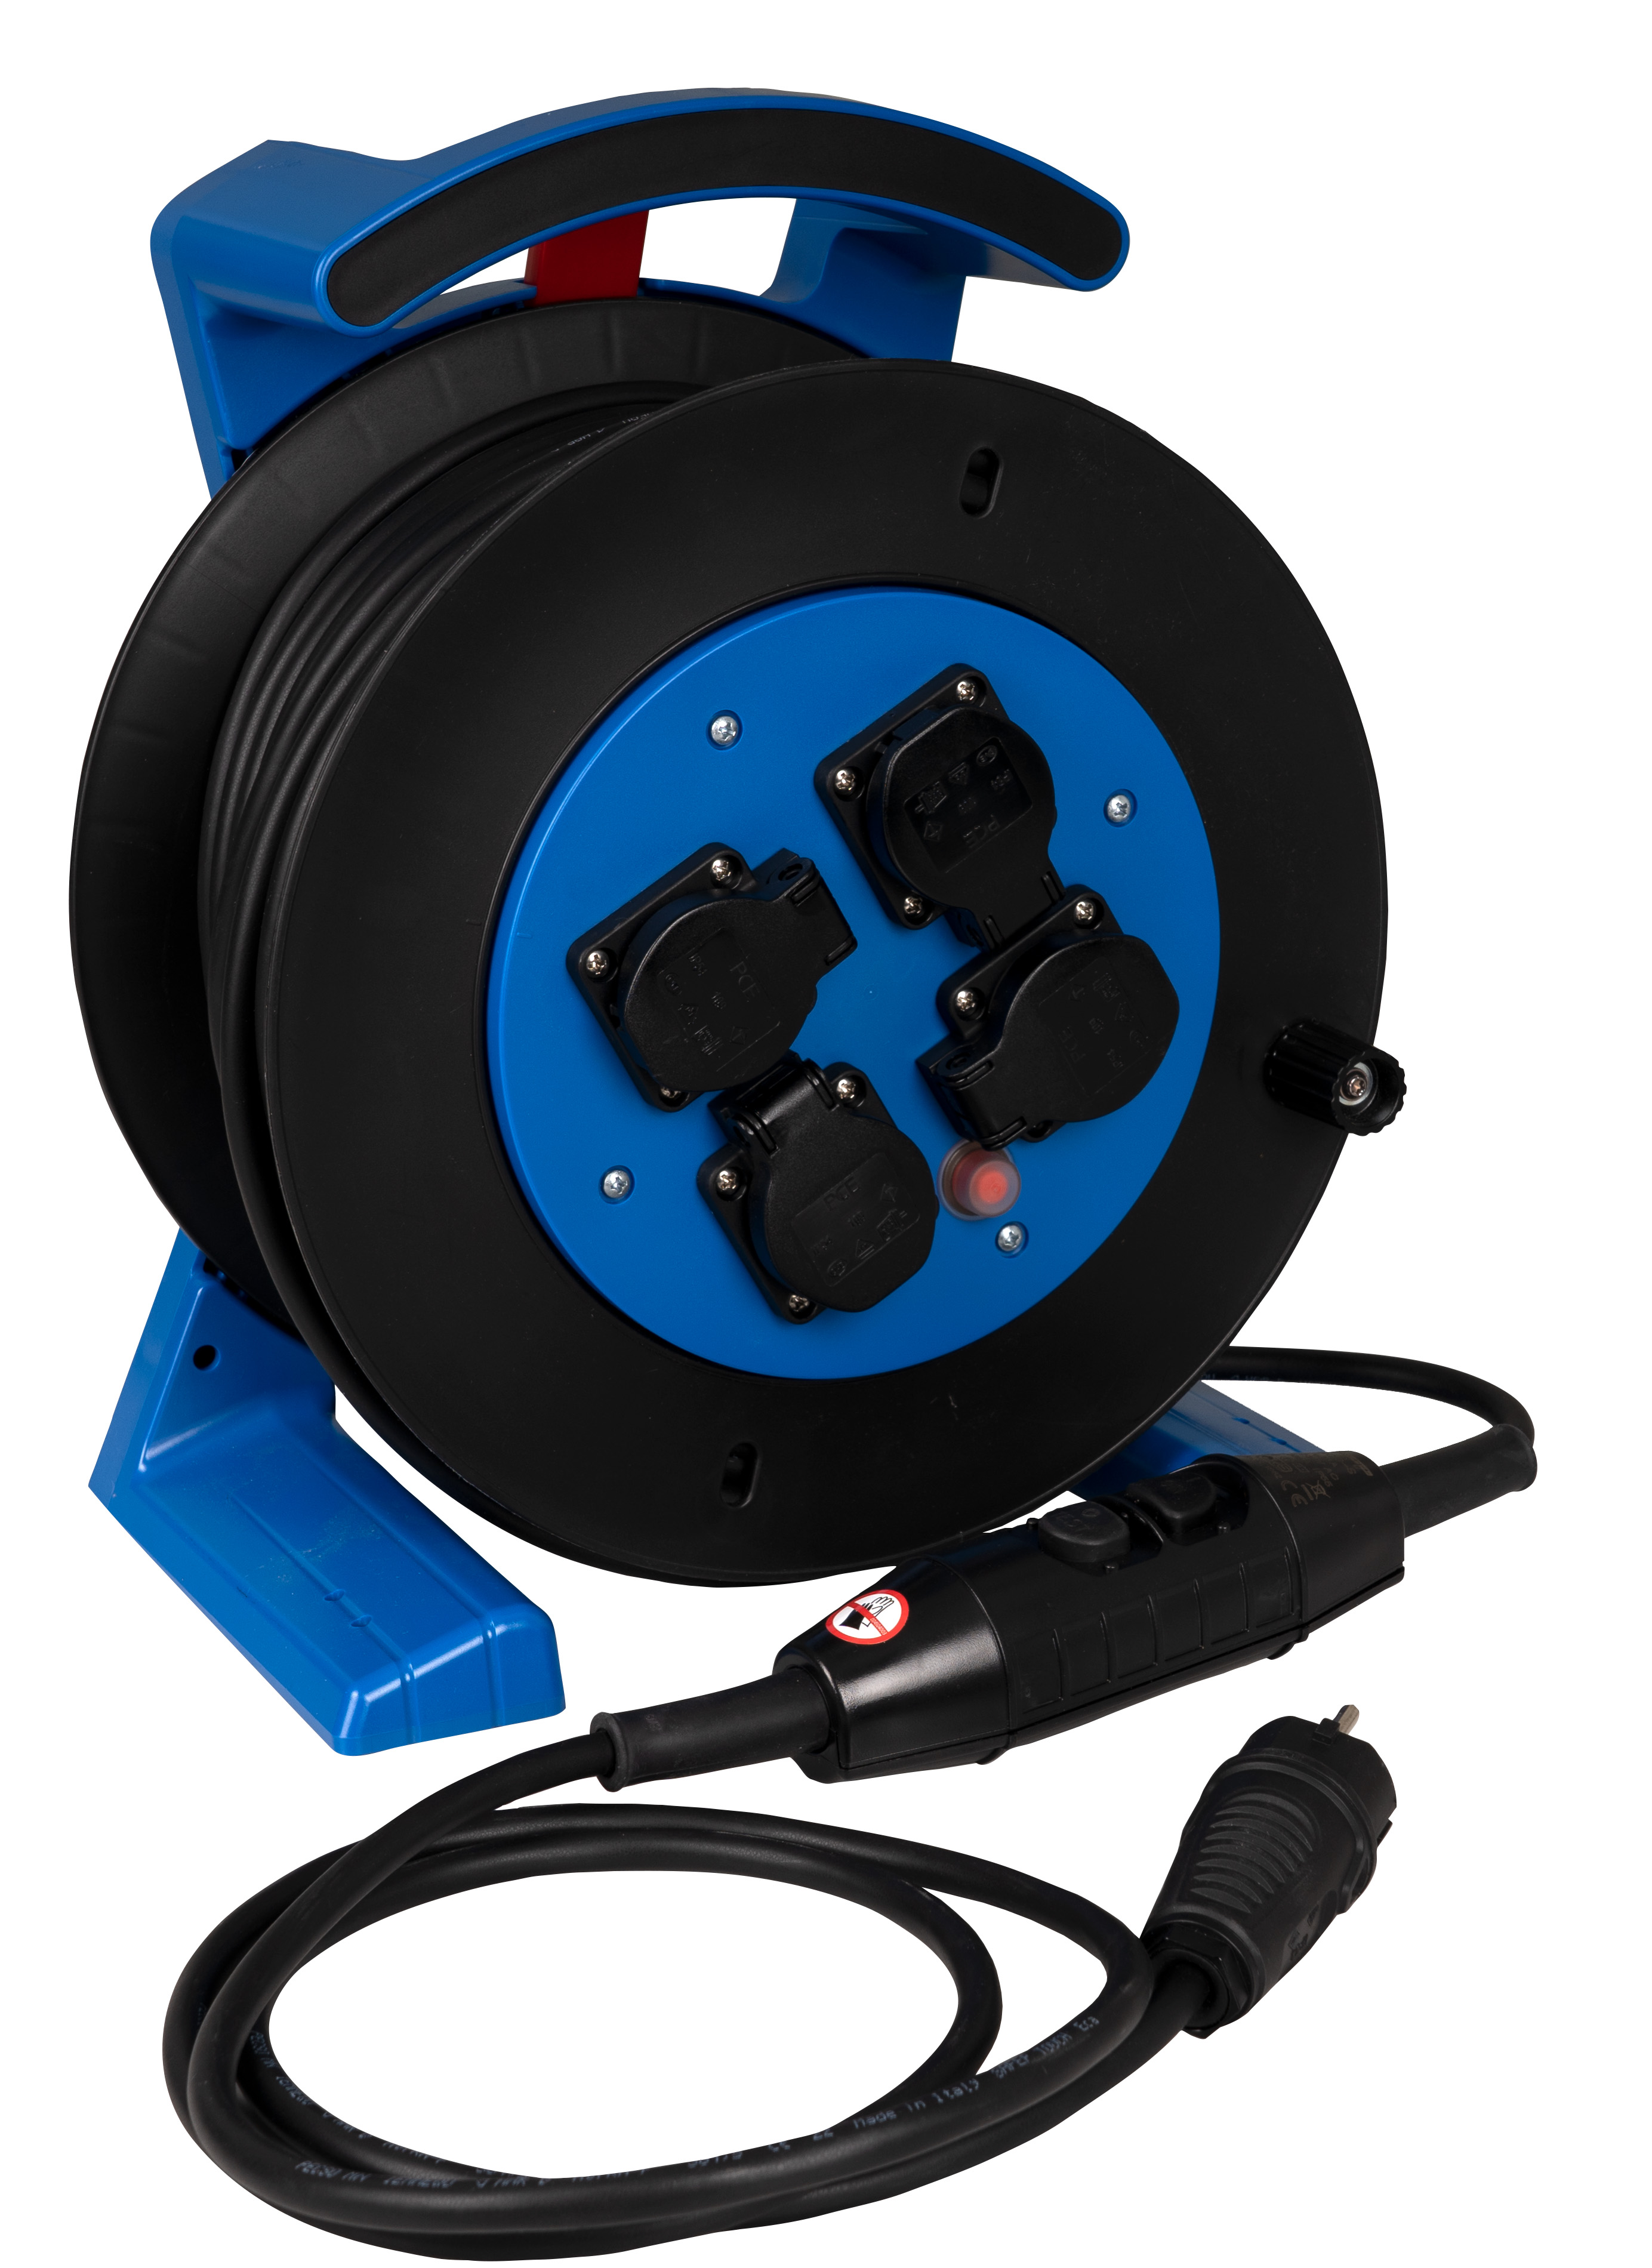 JUMBO kabelhaspel 2.0 in blauw-zwart, 4 contactdozen, H07RN-F 3G1,5 mm², 40 m, met PRCD-S